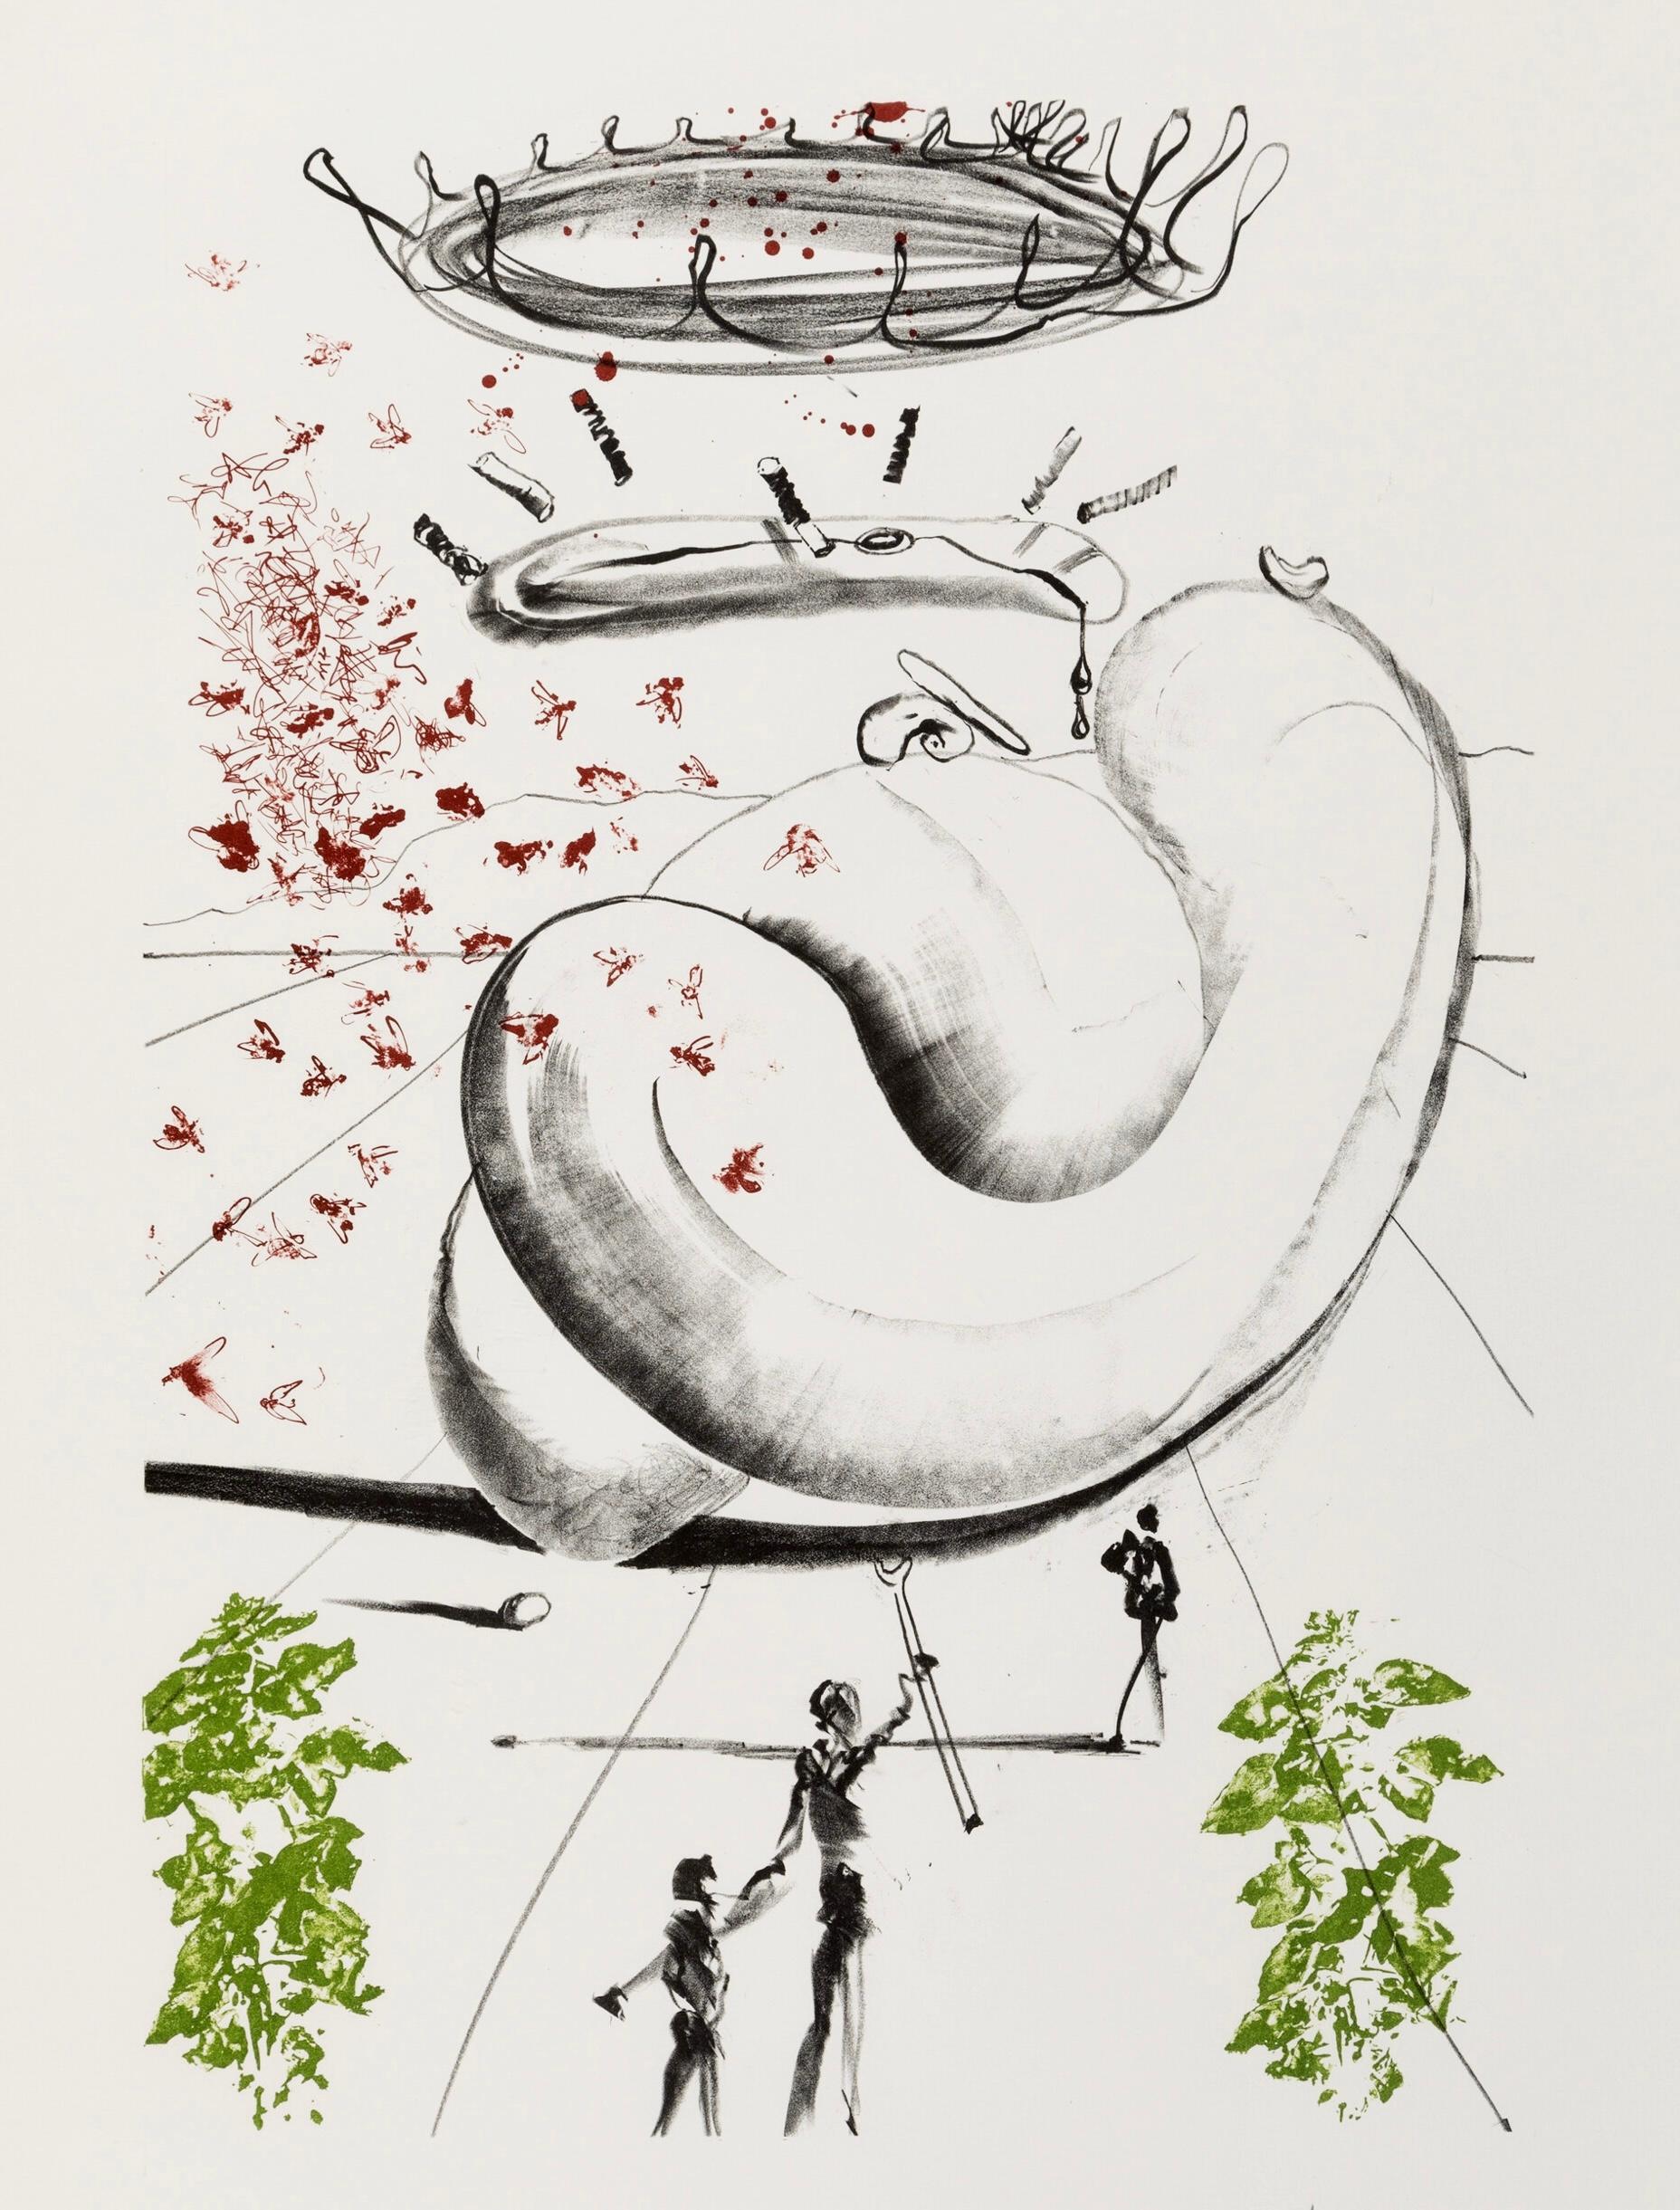 Salvador Dalí Moscas 1973 (extrait de Colibri) :

Lithographie en couleurs sur papier Arches. 
30 x 22,25 pouces (83,8 x 56,5 cm).

Bon état général du Vintage ; quelques signes mineurs de manipulation ; petites marques de surface. 

Signée et